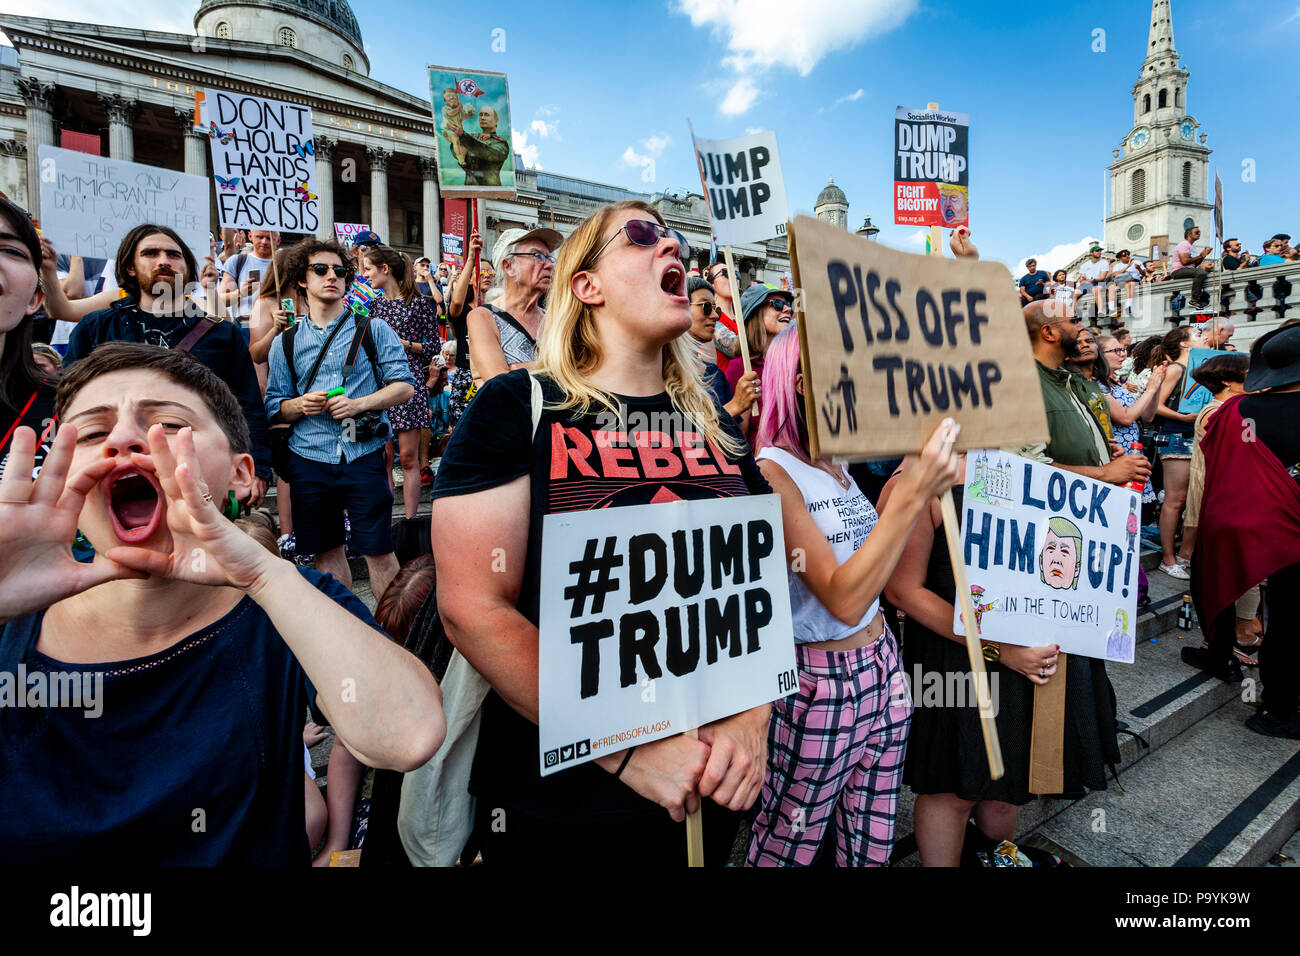 El triunfo contra manifestantes en contra de la visita de los presidentes de EE.UU. al Reino Unido, Trafalgar Square, Londres, Inglaterra Foto de stock